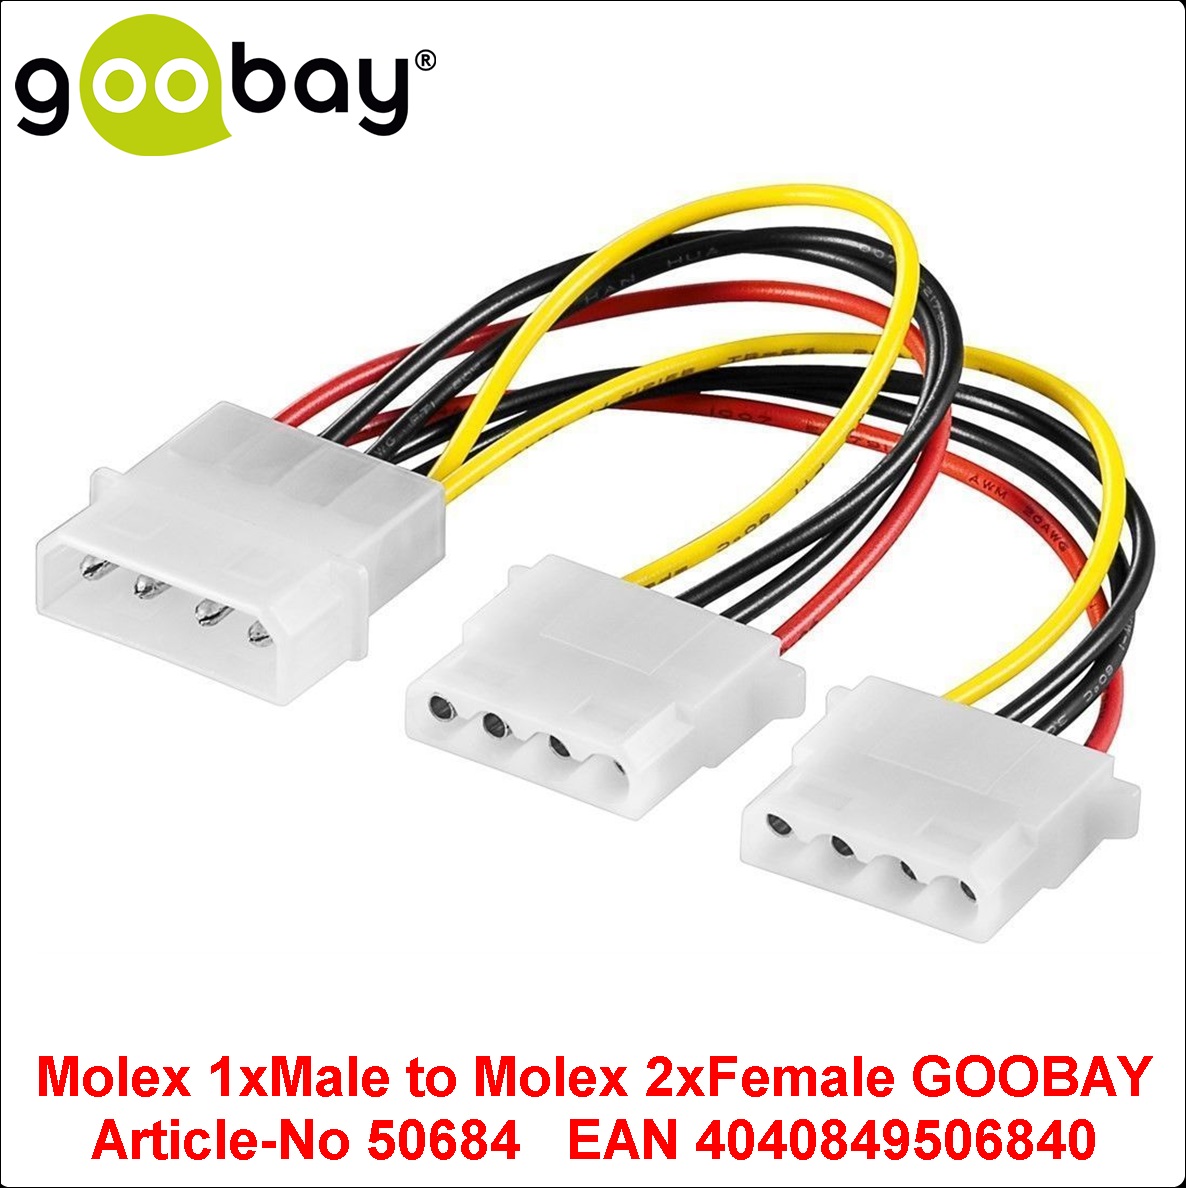 Molex 1xMale to Molex 2xFemale GOOBAY 50684